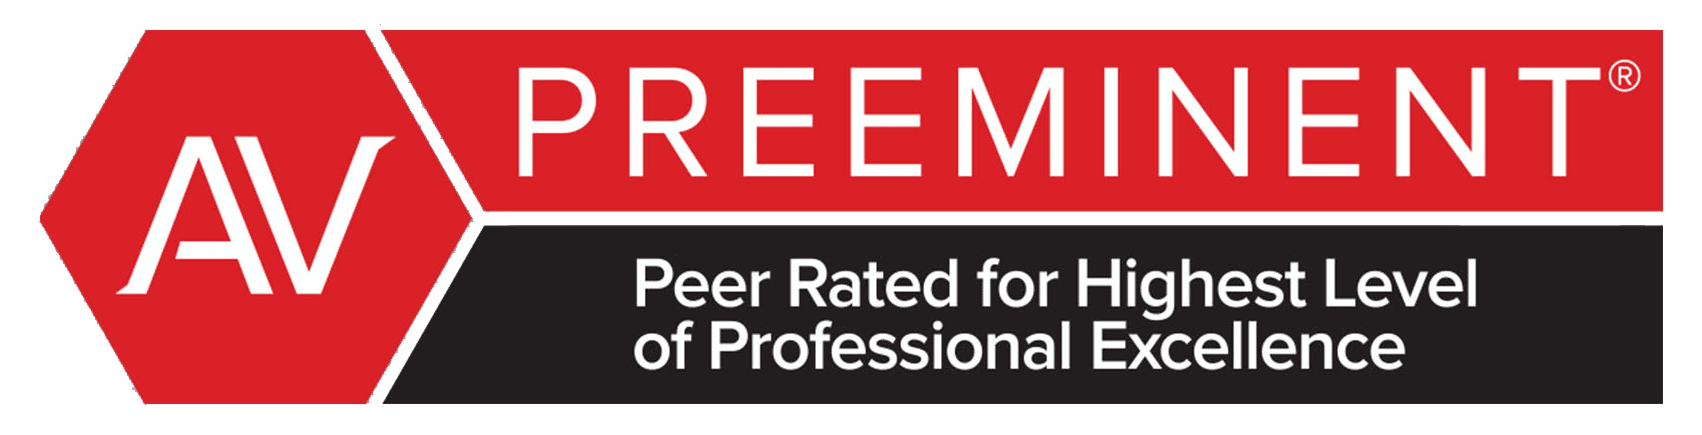 AV Preeminent Peer Rated for Highest Level of Professional Excellence logo